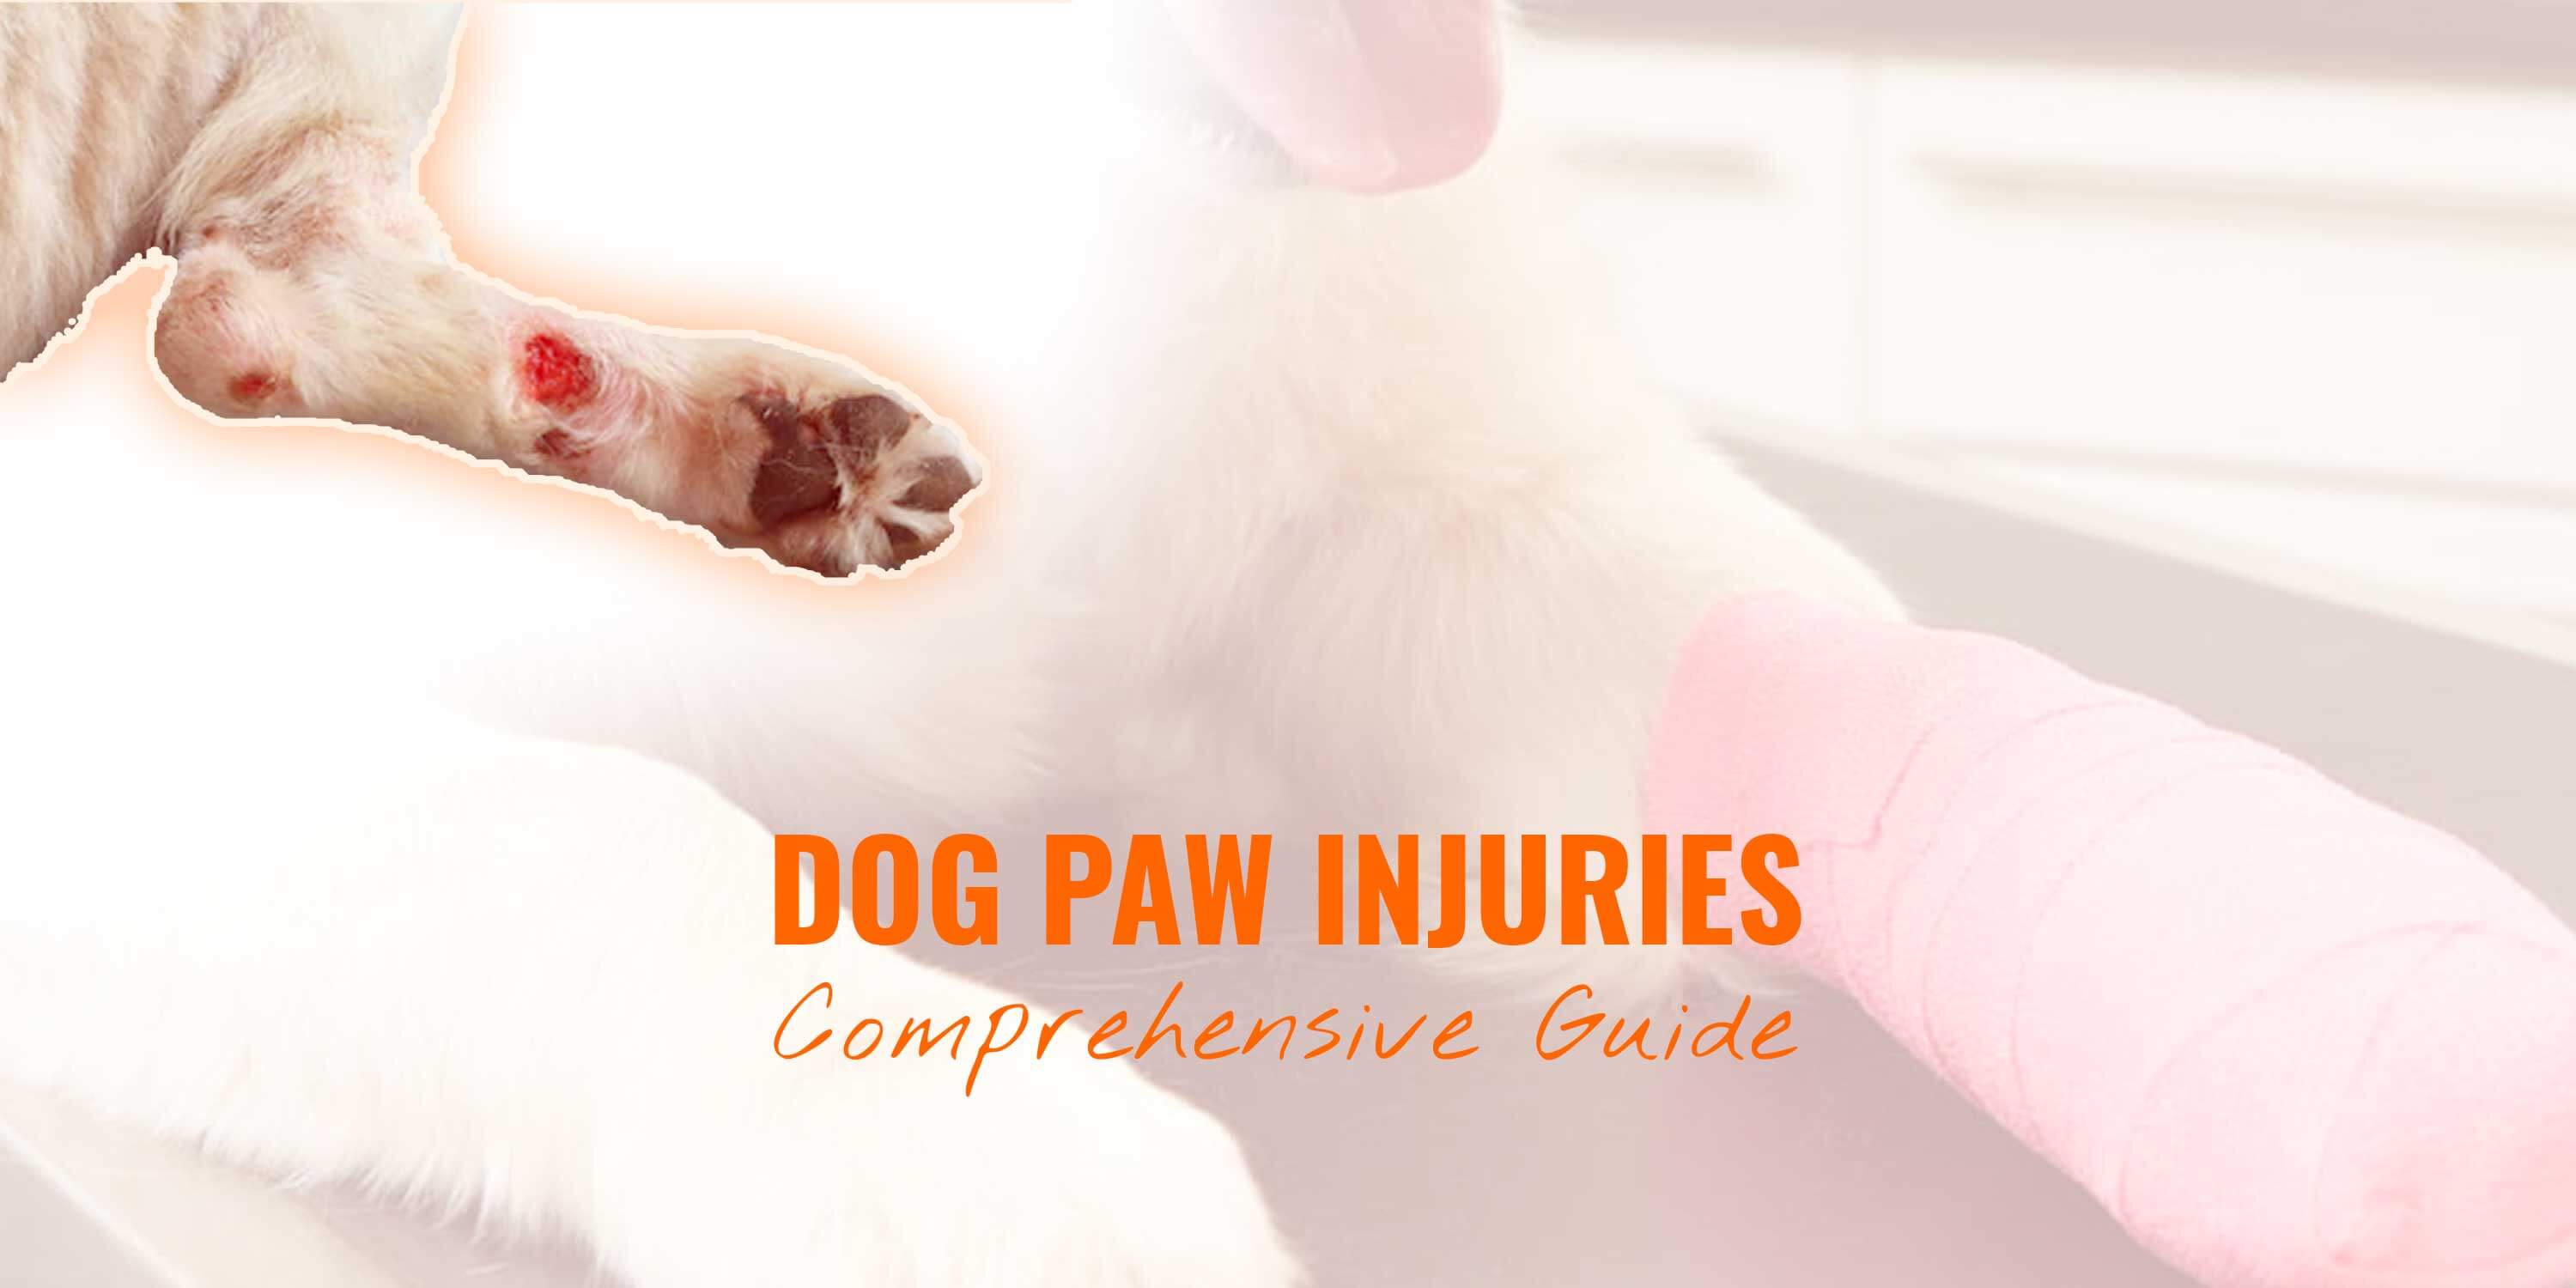 Dog Paw Injuries